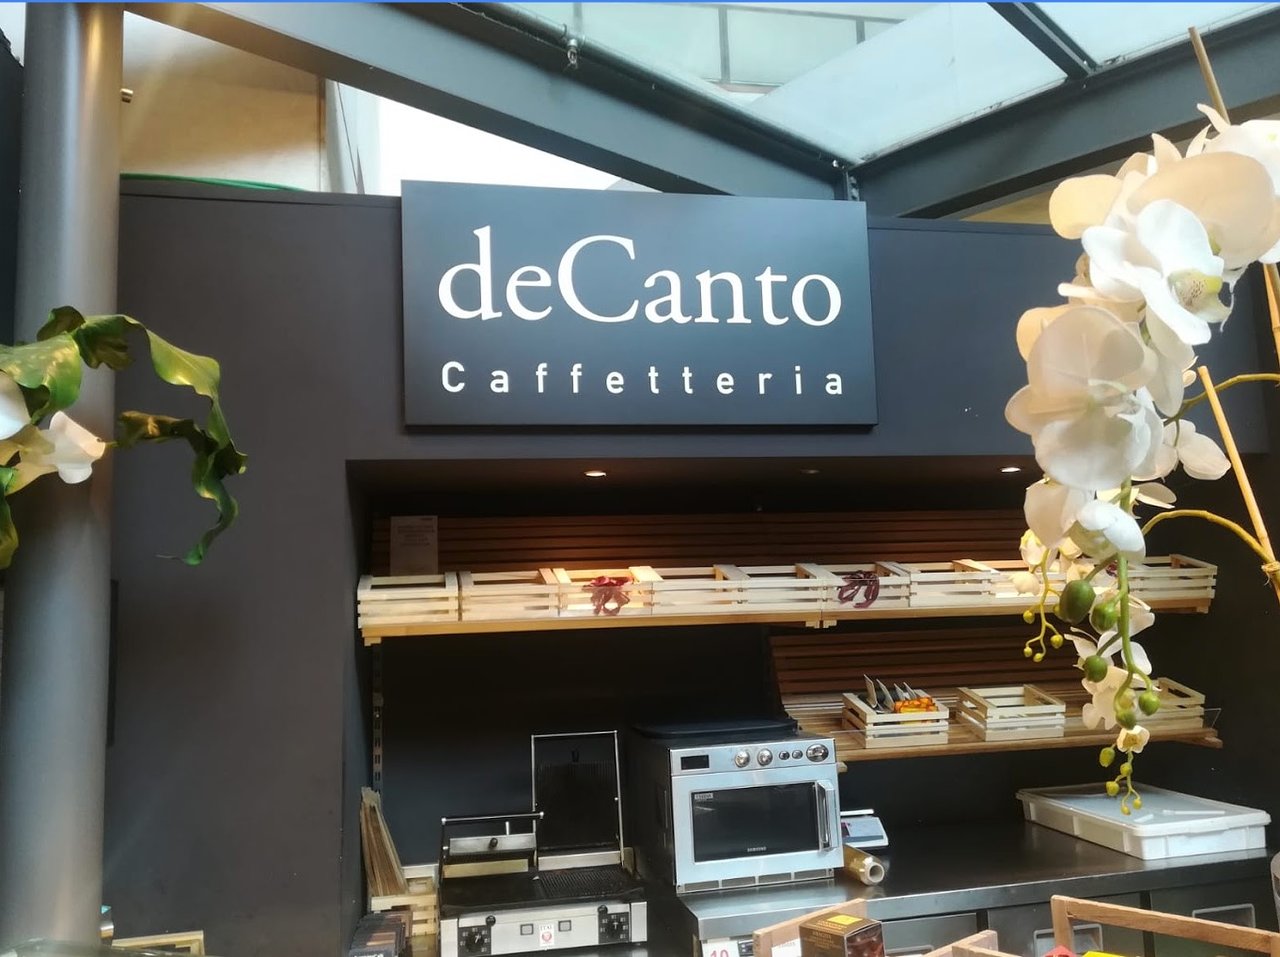 Decanto | Caffetteria, Venezia